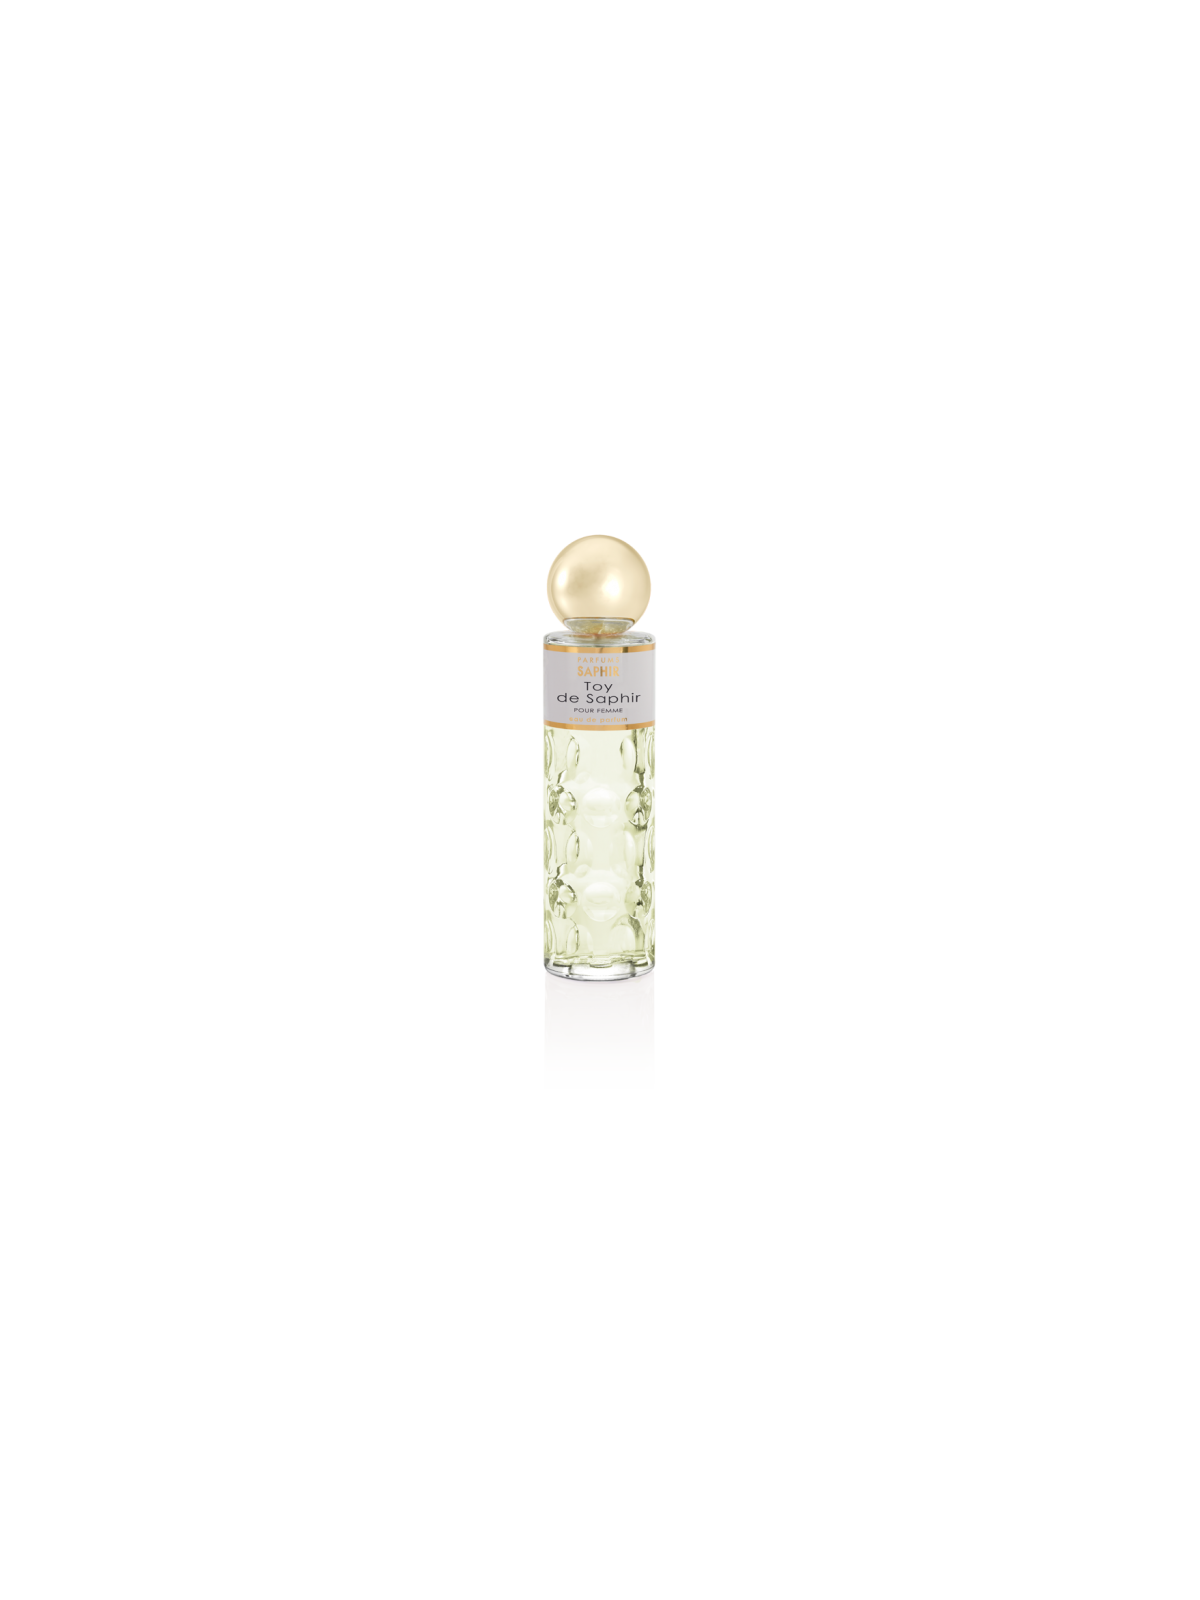 Comprar Perfume SAPHIR Toy de Saphir 200ml. en Perfumes para mujer por sólo 13,90 € o un precio específico de 13,90 € en Thalie Care